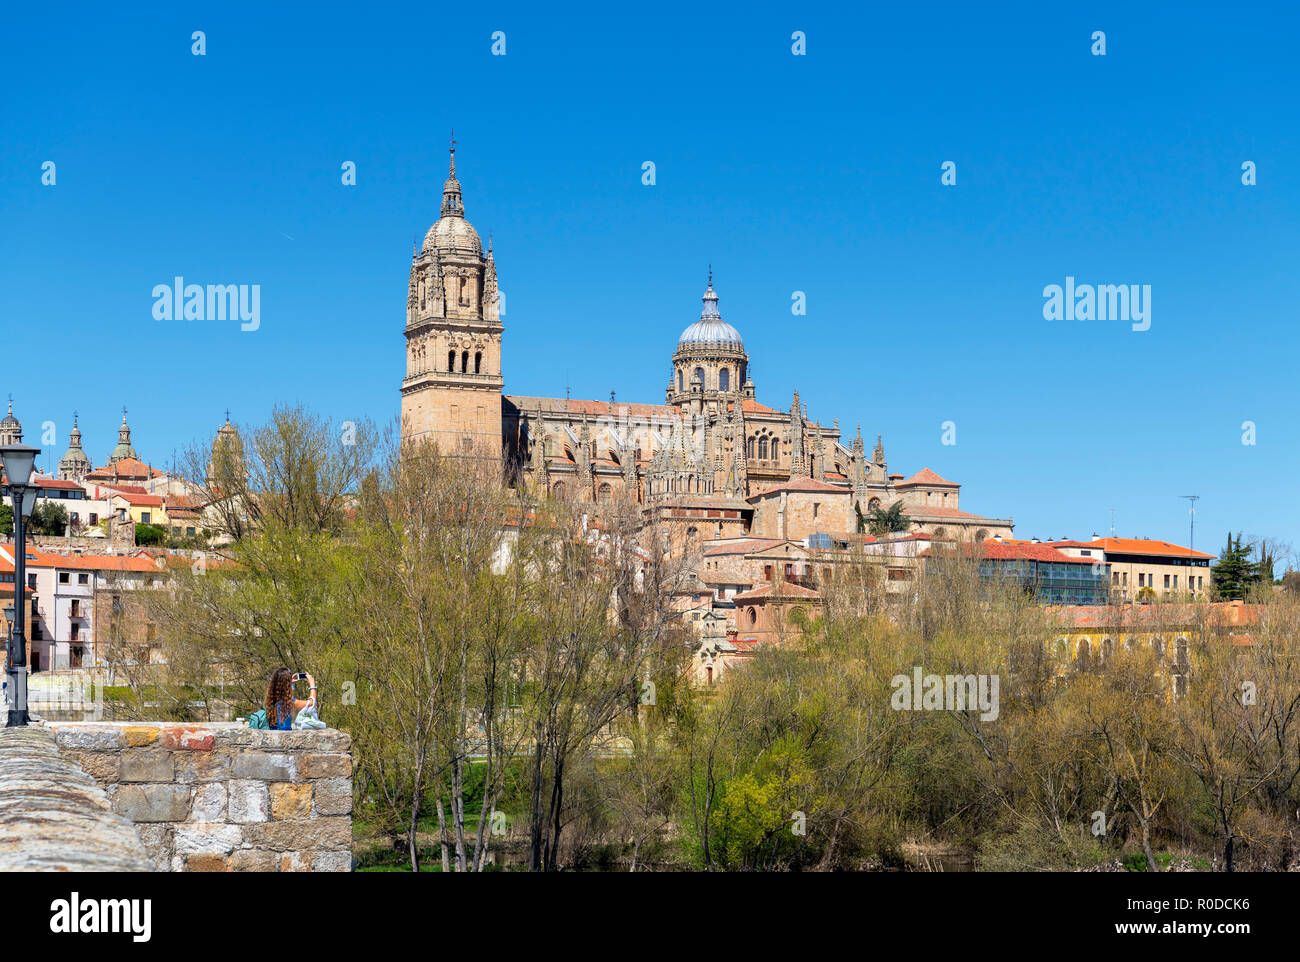 Prendre une photo de tourisme La vieille ville et des cathédrales de la Puente Romano (pont romain), Salamanca, Castilla y Leon, Espagne Banque D'Images